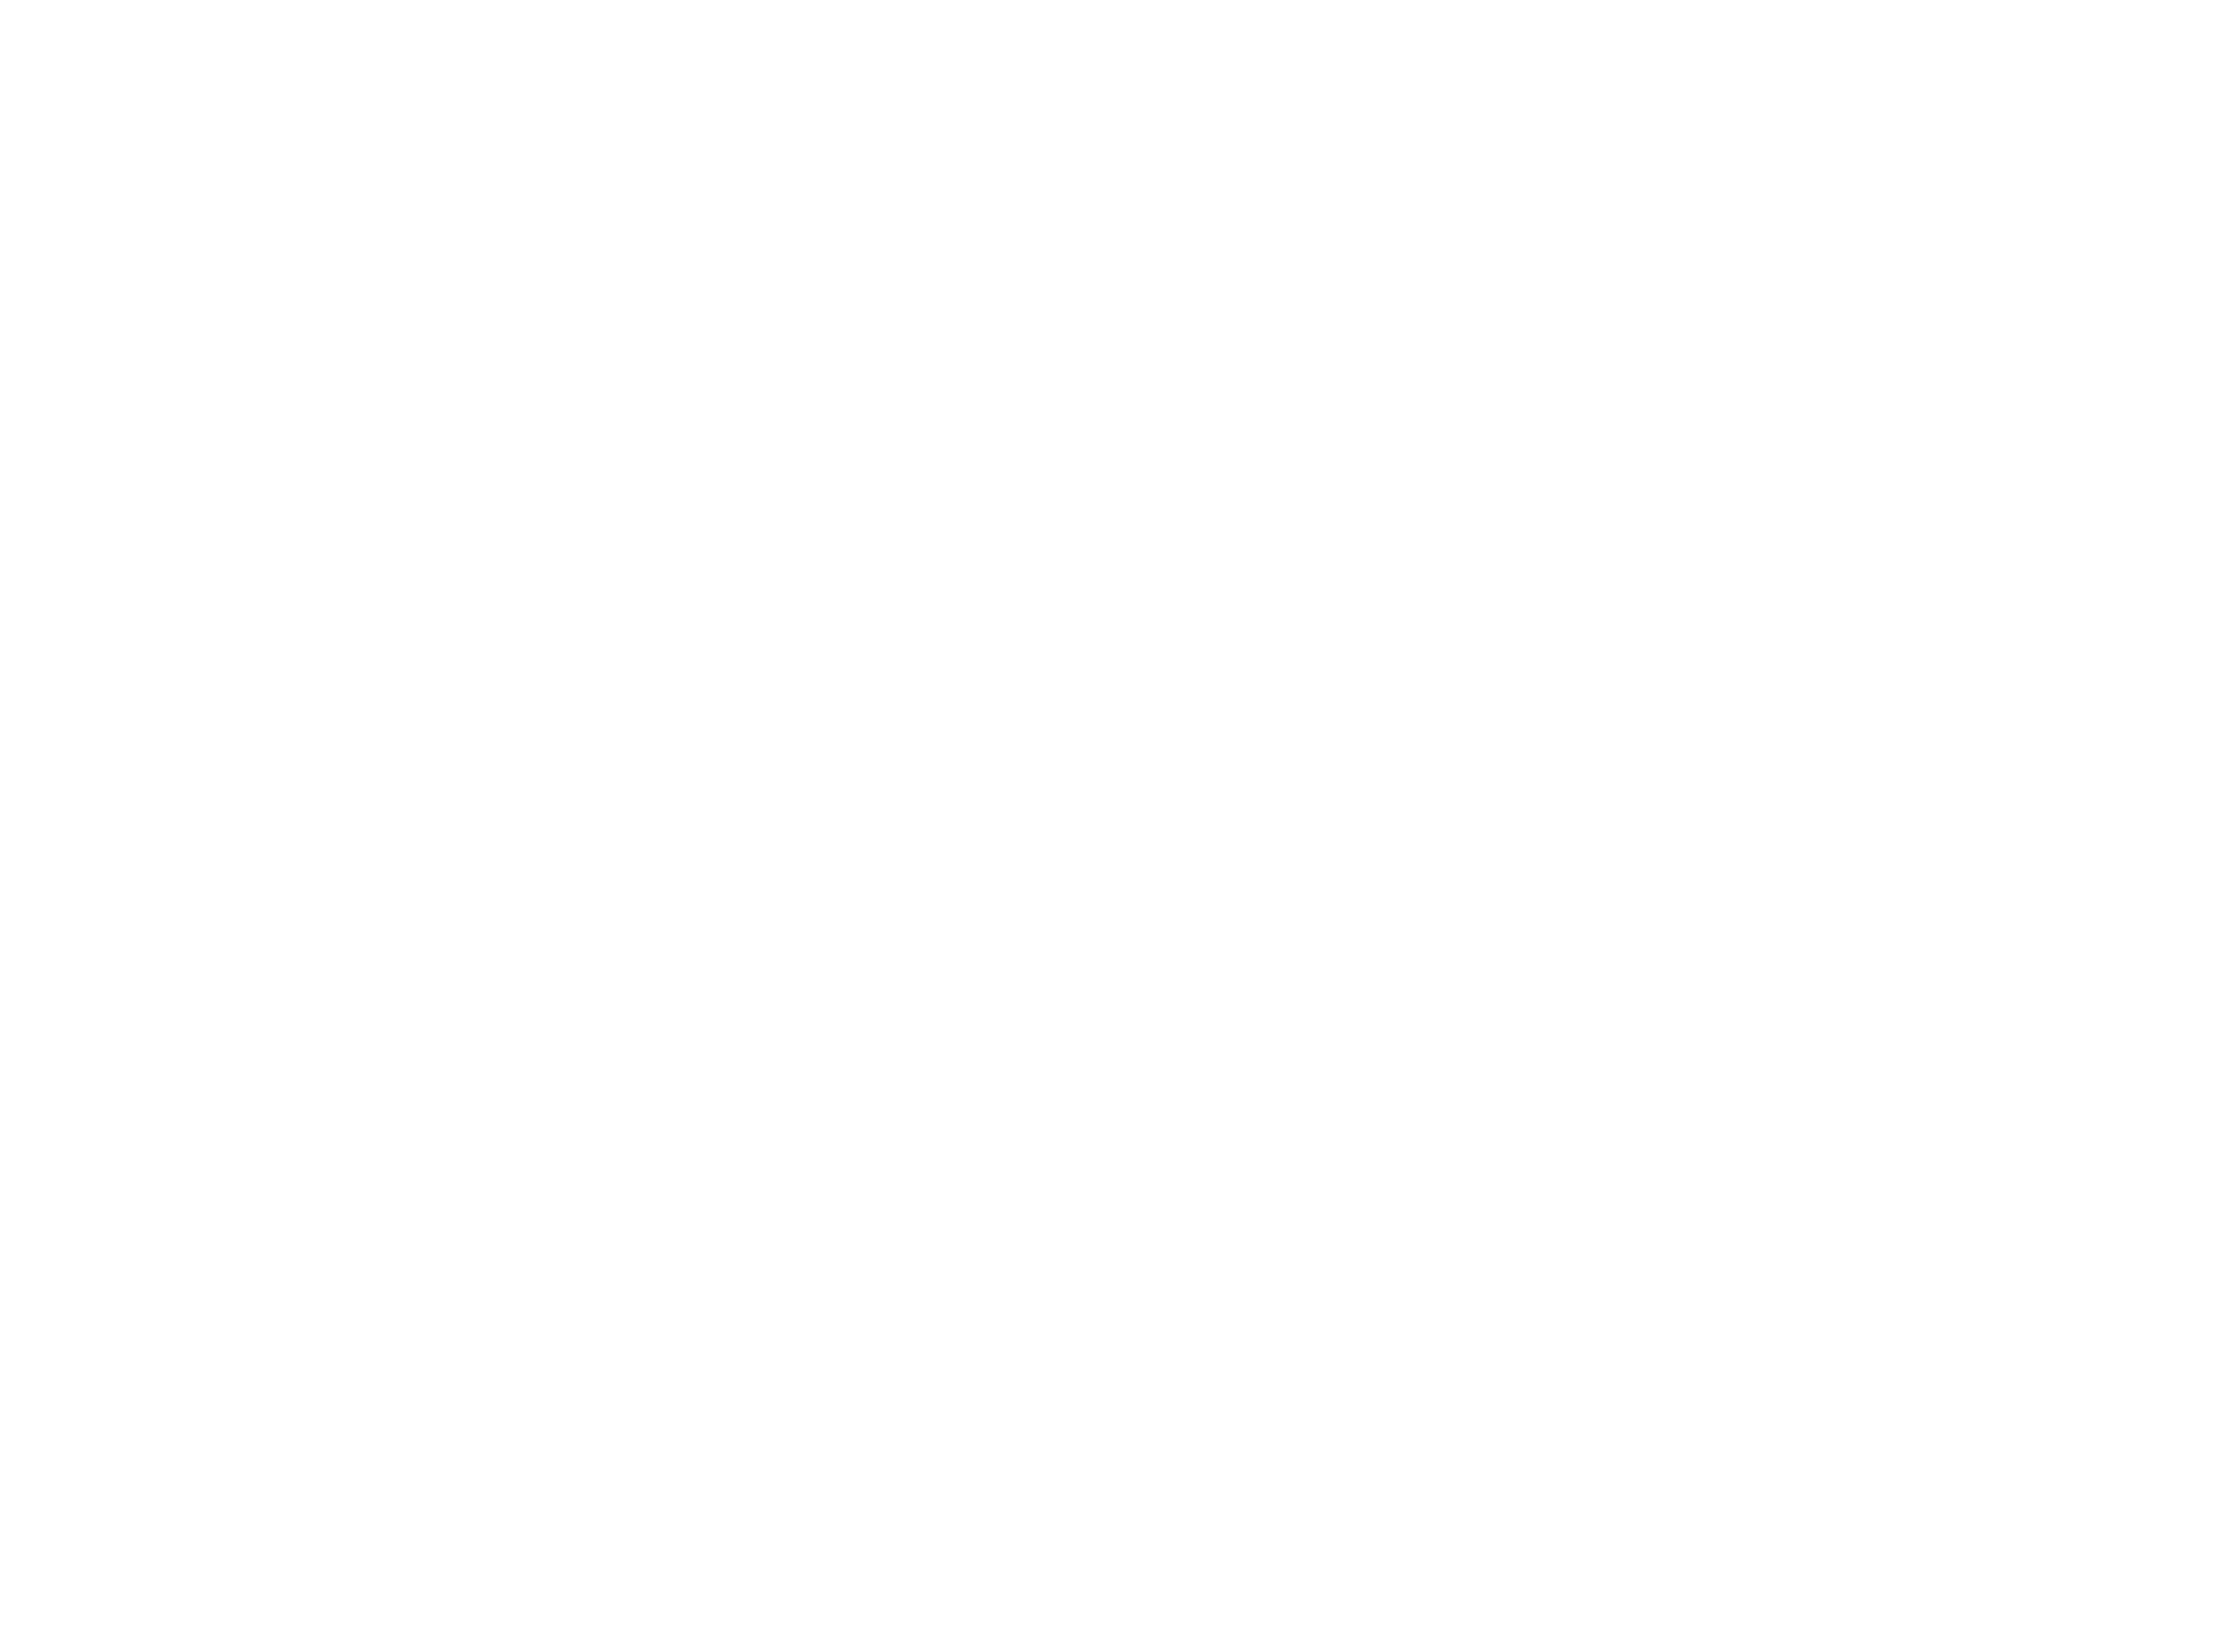 OffKai Expo Logo all white